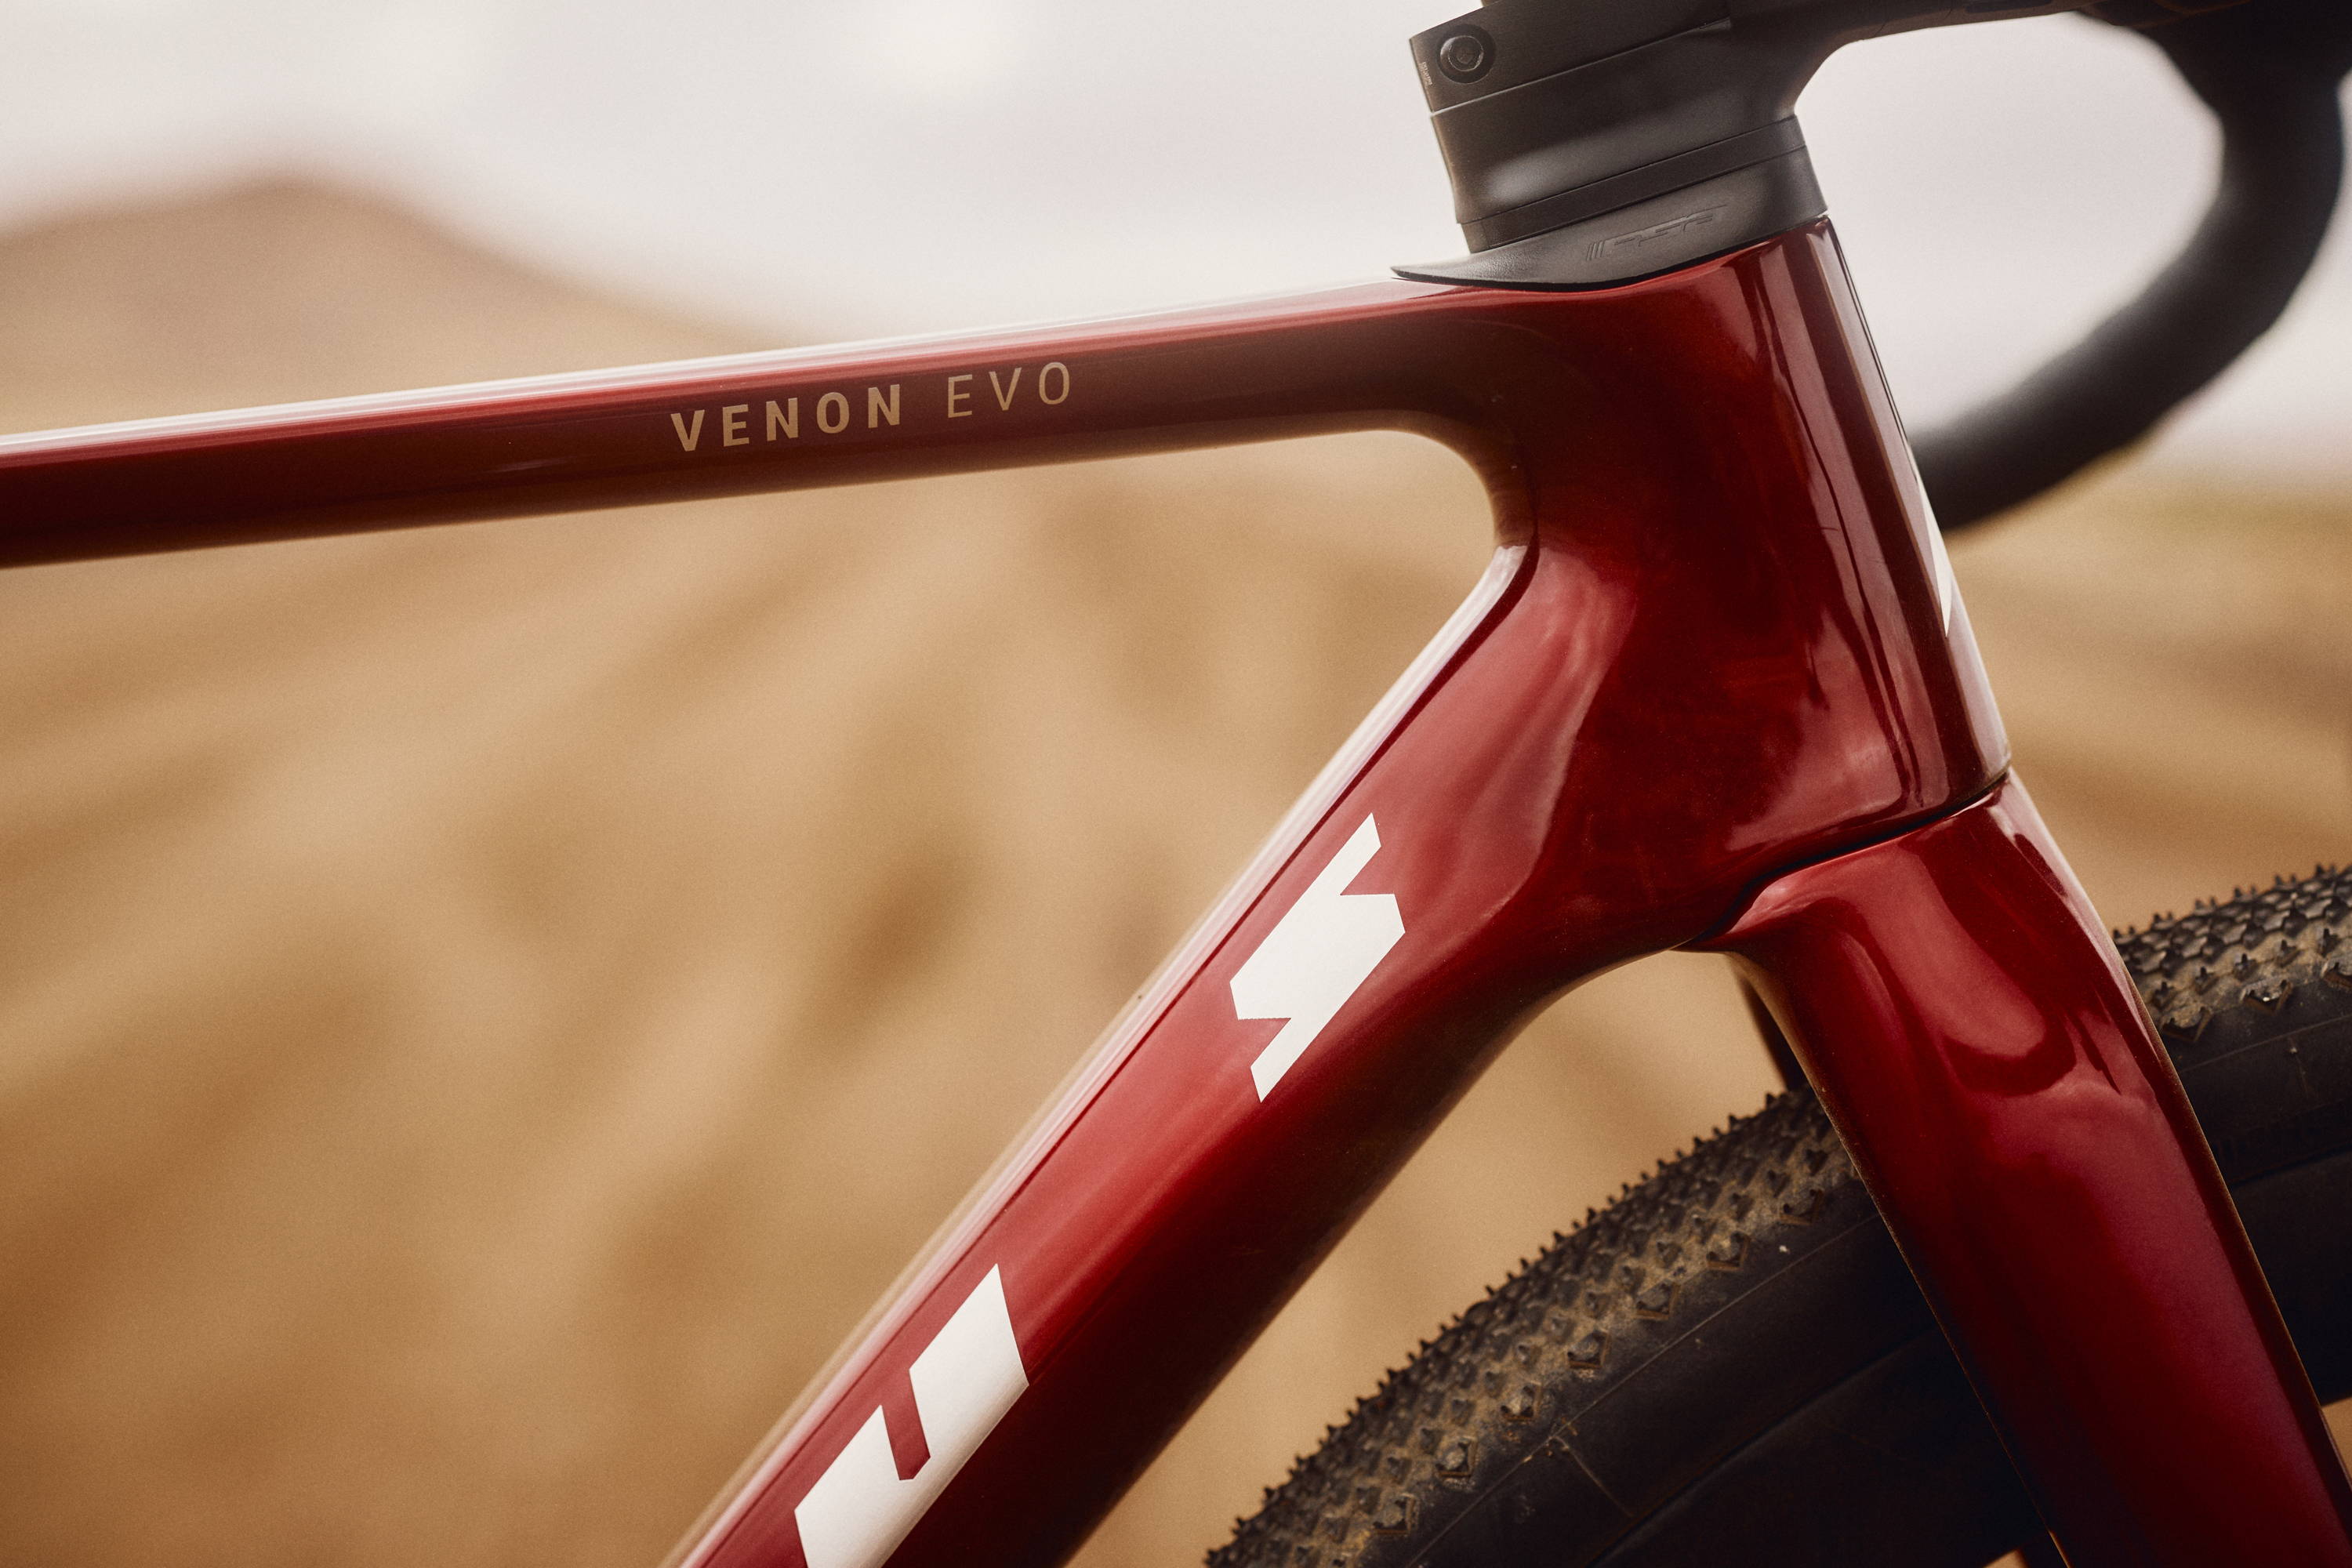 A close up of the all-new Venon EVO-GR